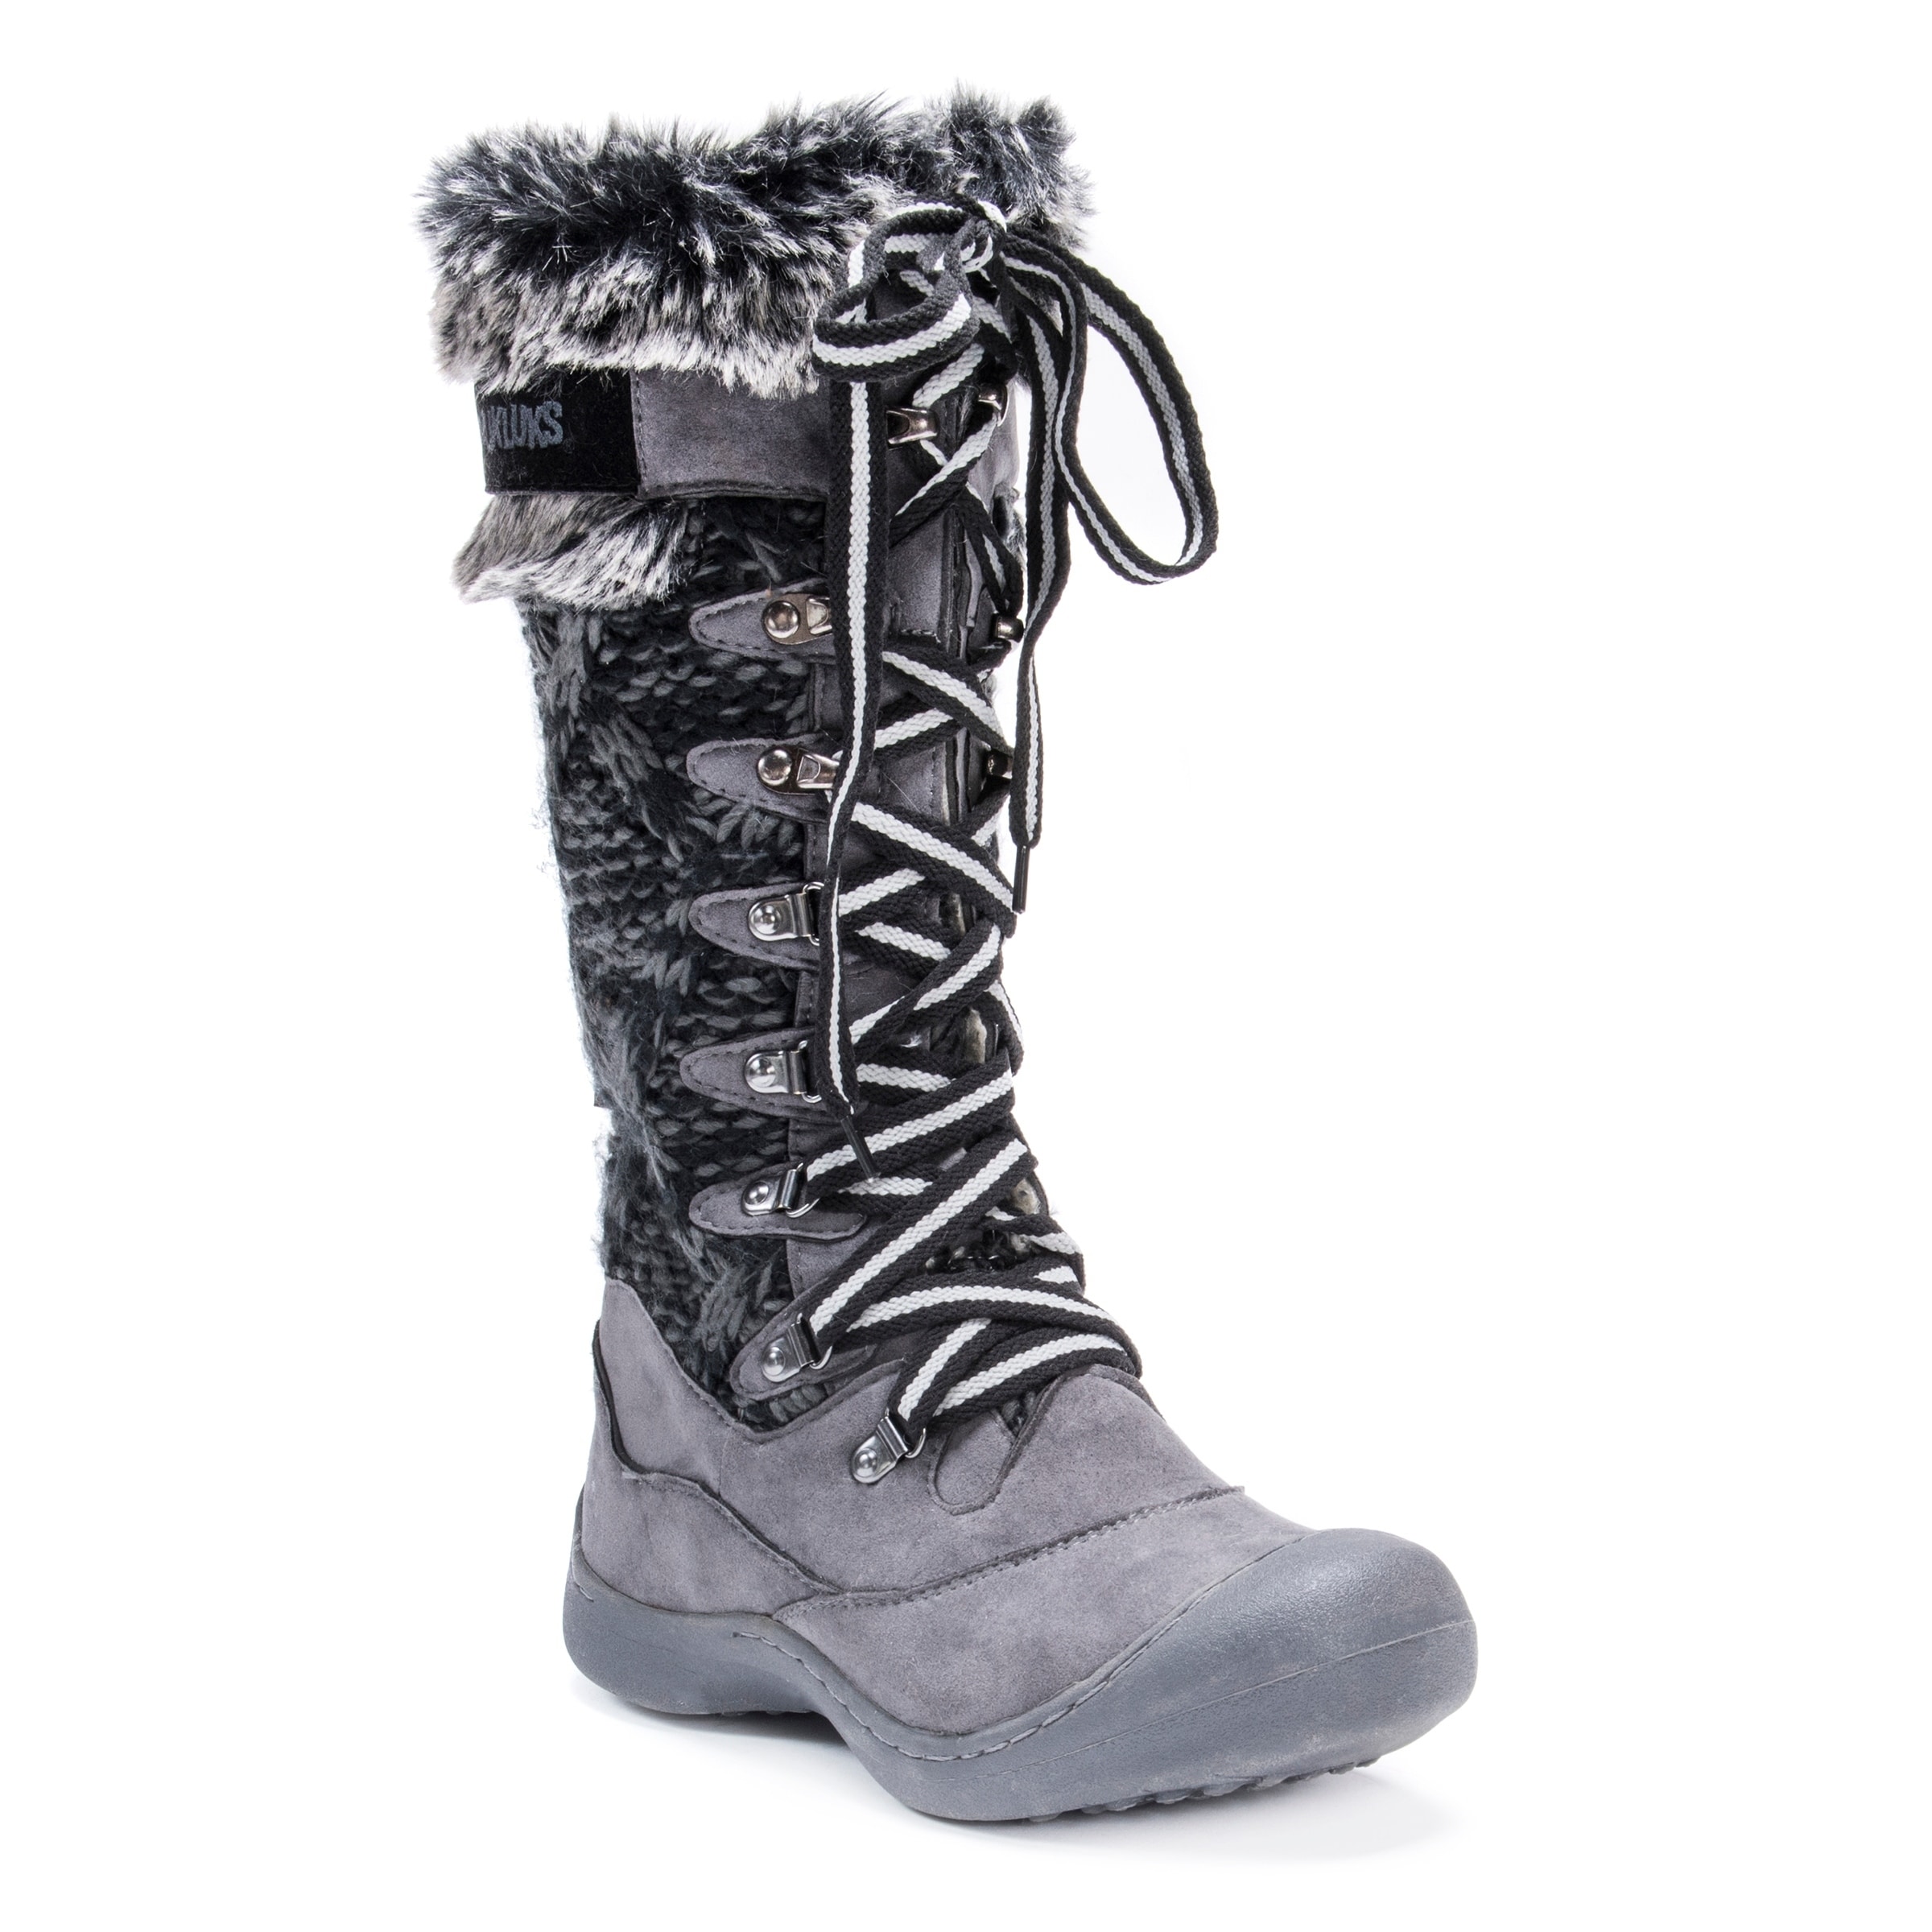 muk luk women's snow boots